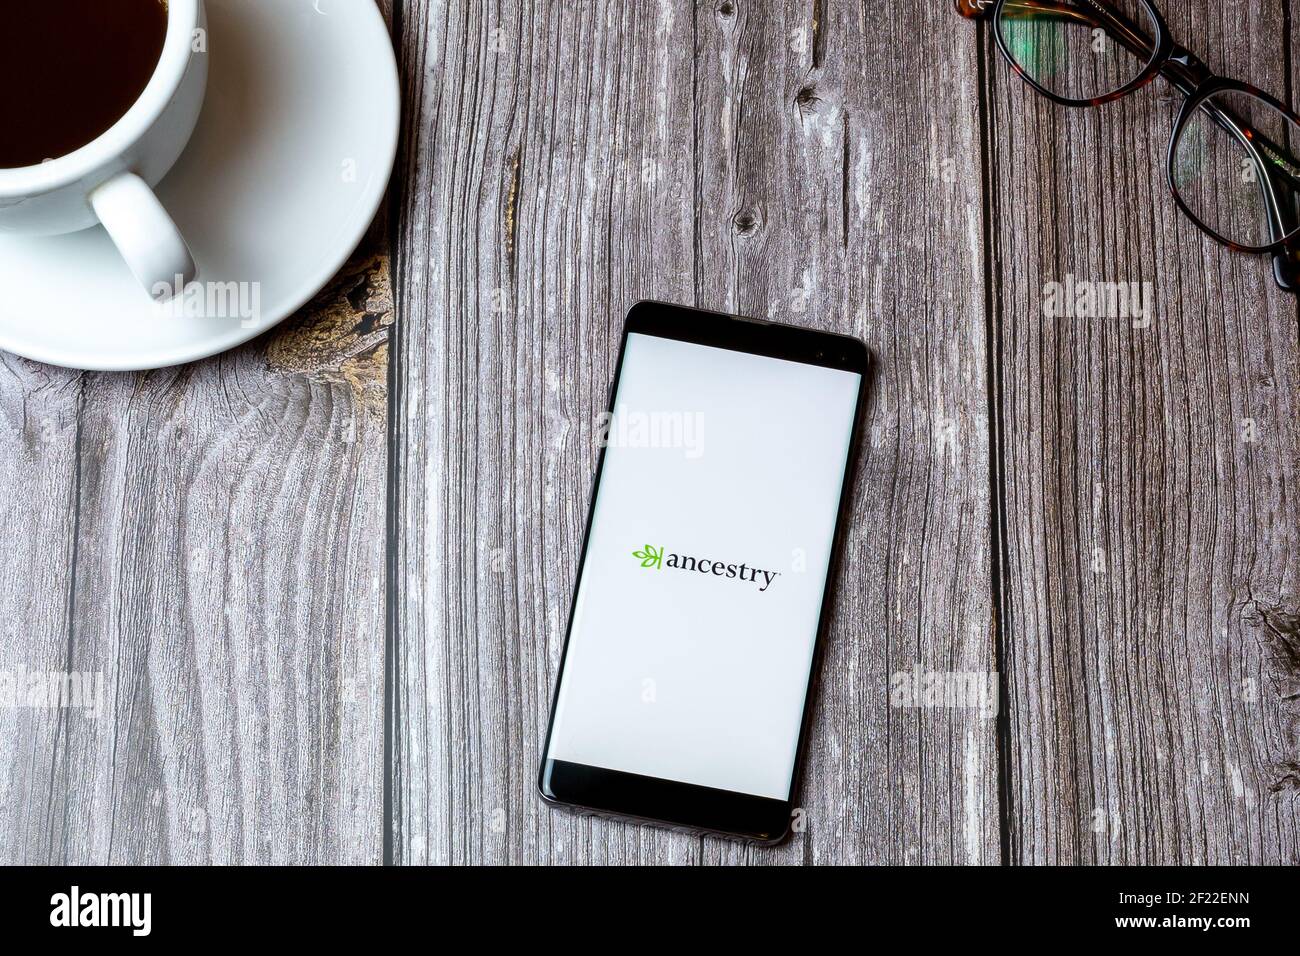 Ein Handy oder Handy auf einem Holz gelegt Tabelle mit der App Ancestry auf dem Bildschirm neben geöffnet Ein Kaffee Stockfoto